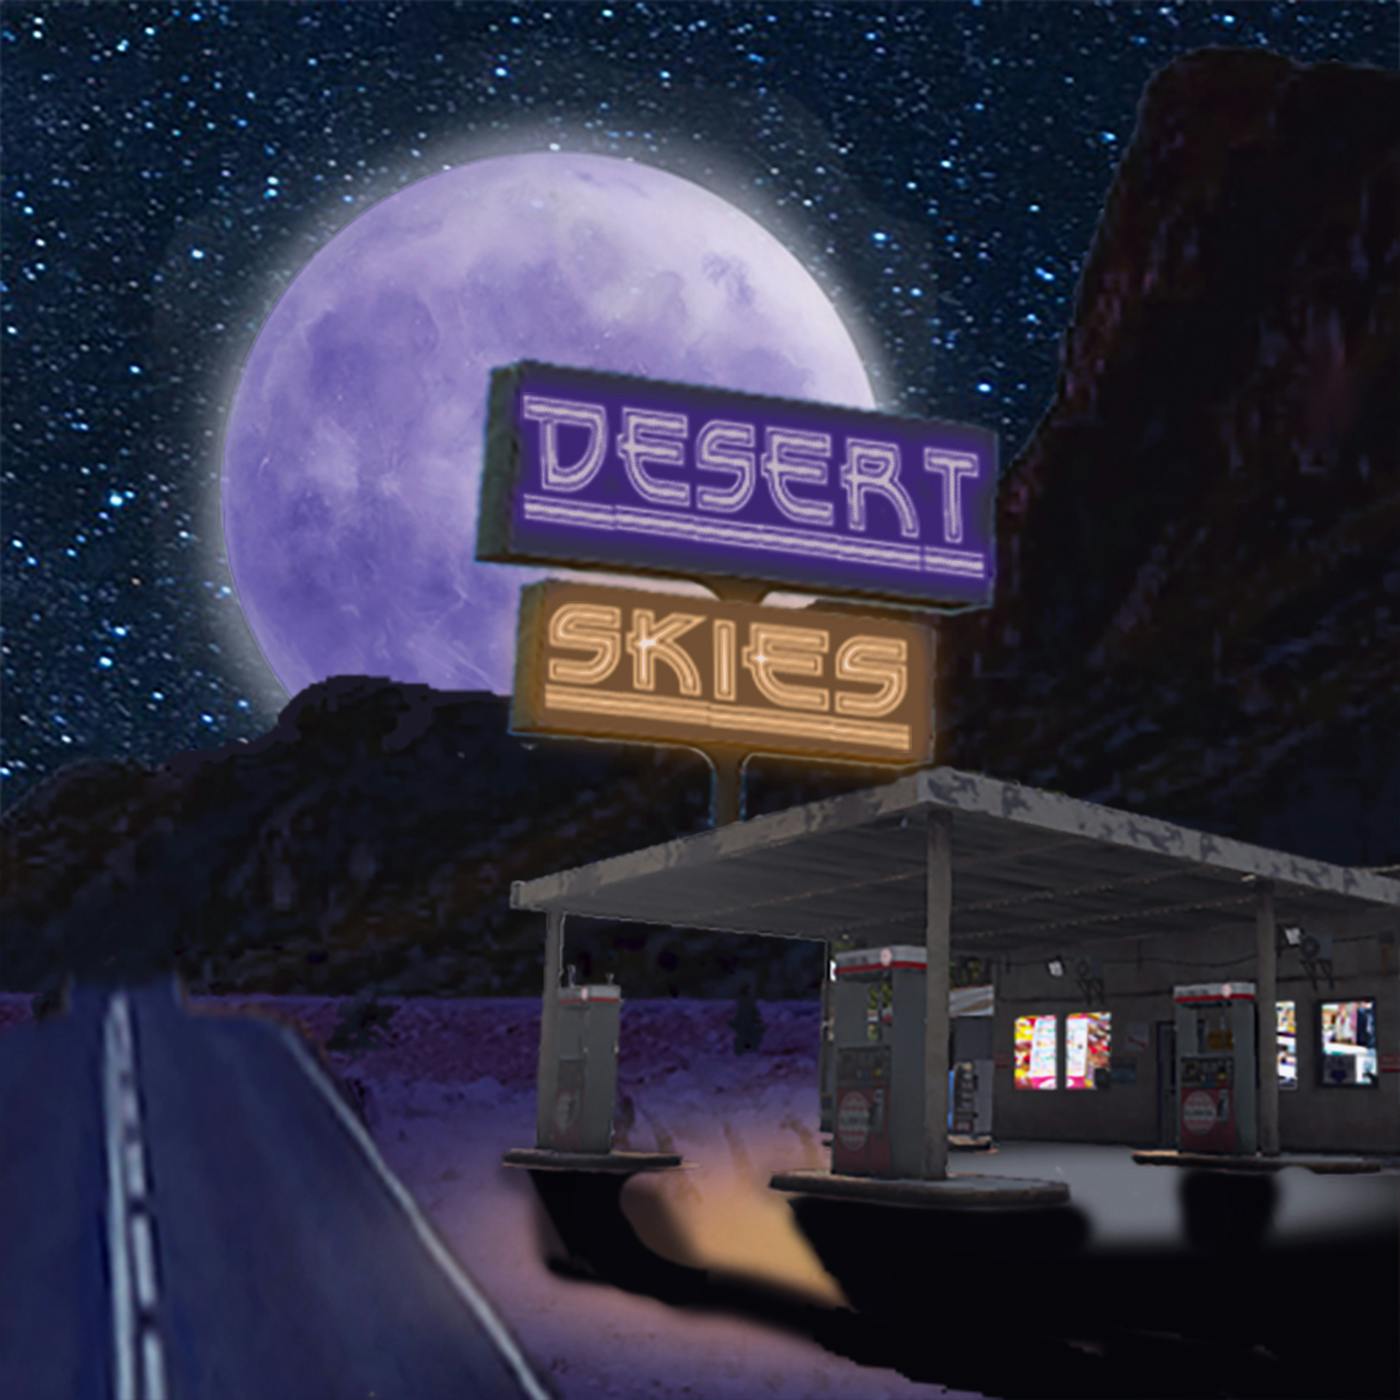 Desert Skies - Club 86